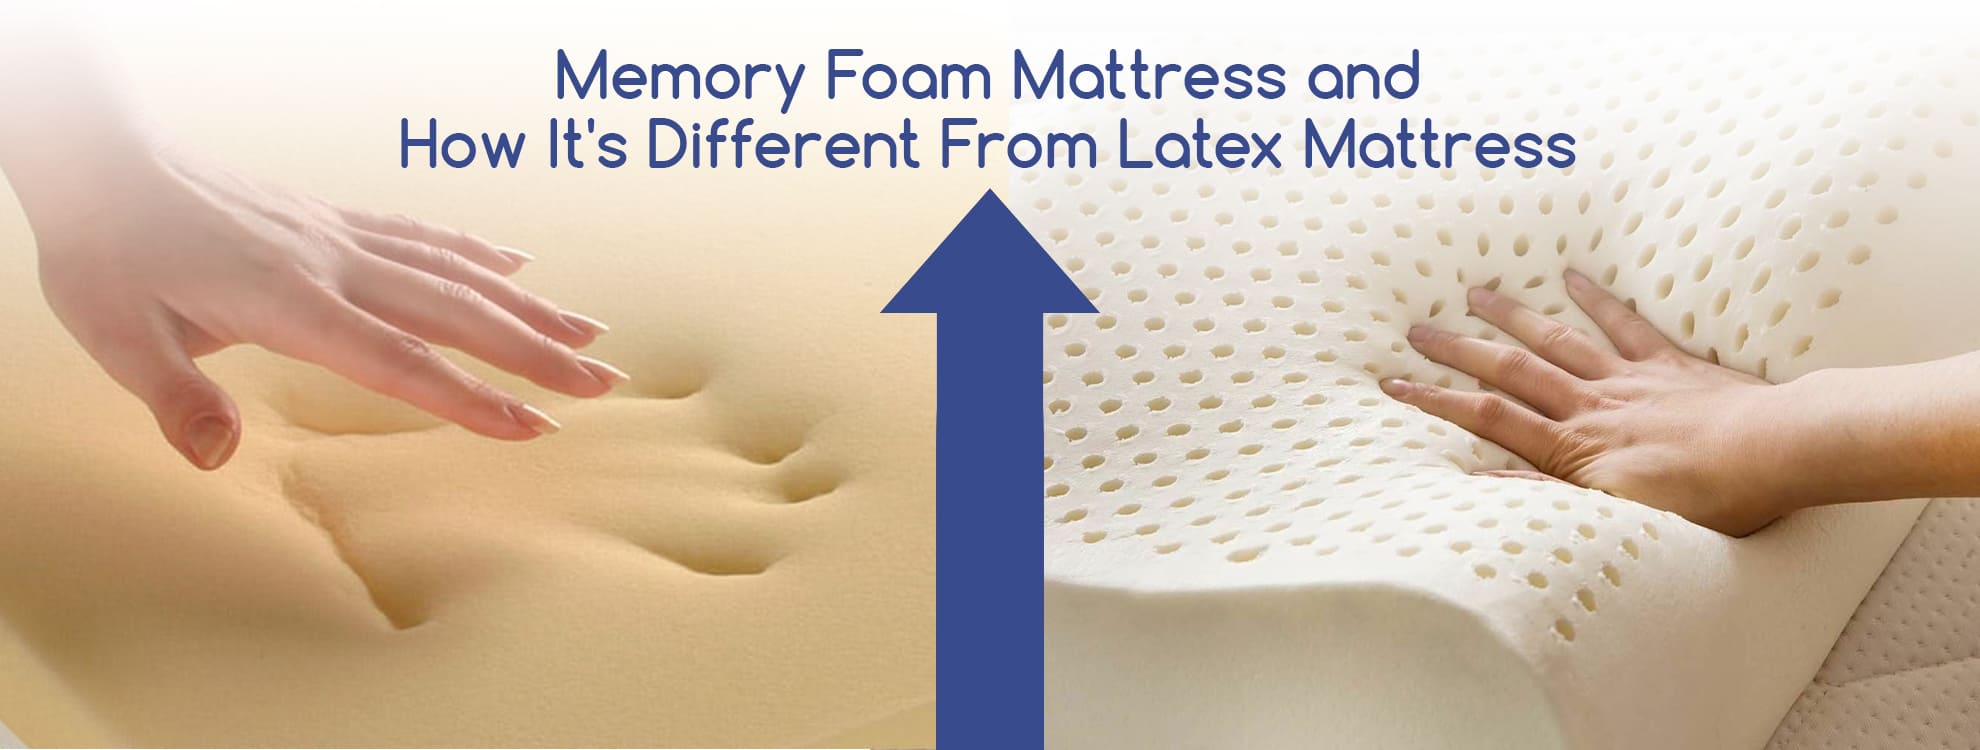 latex mattress compared to foam